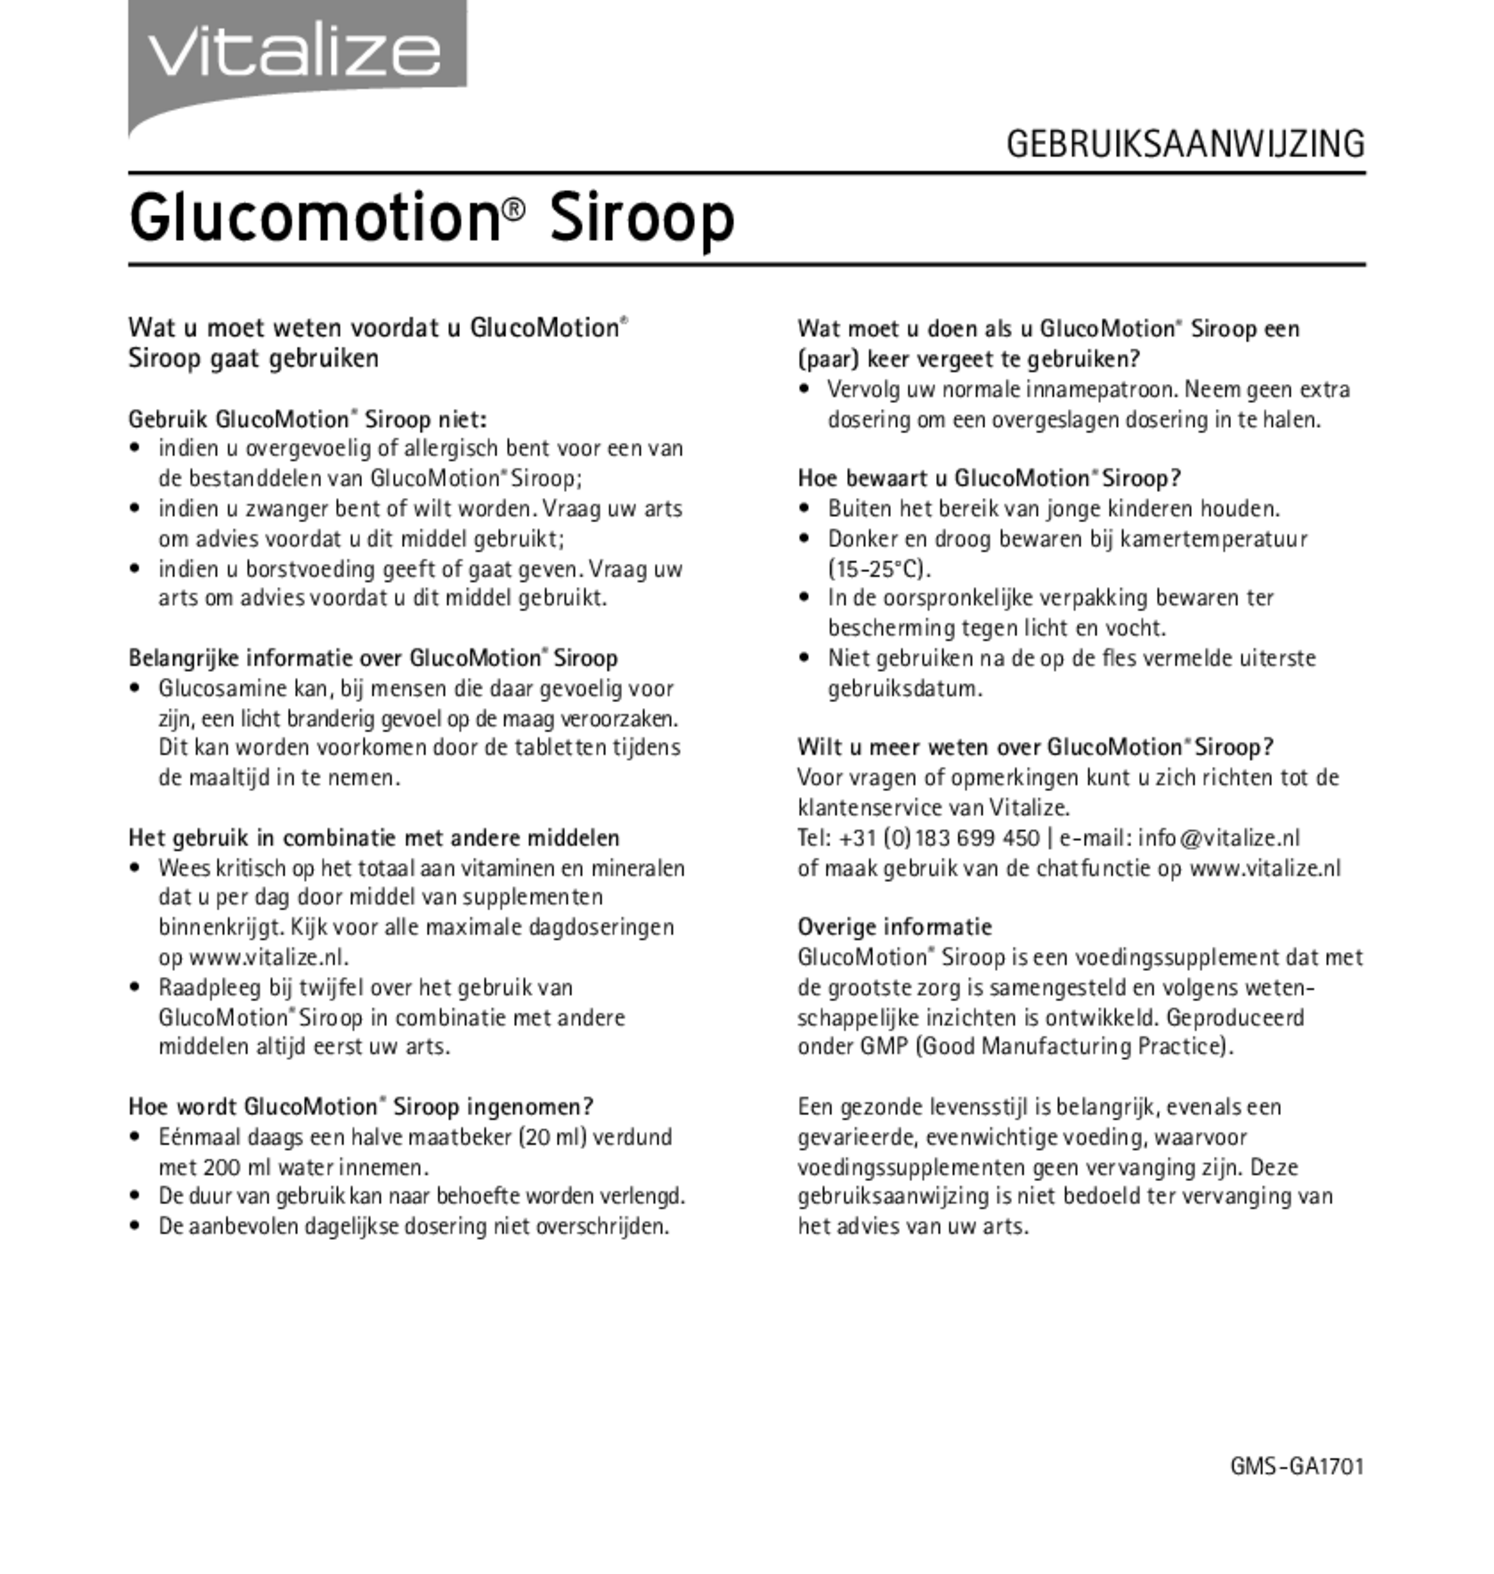 GlucoMotion Siroop afbeelding van document #2, gebruiksaanwijzing